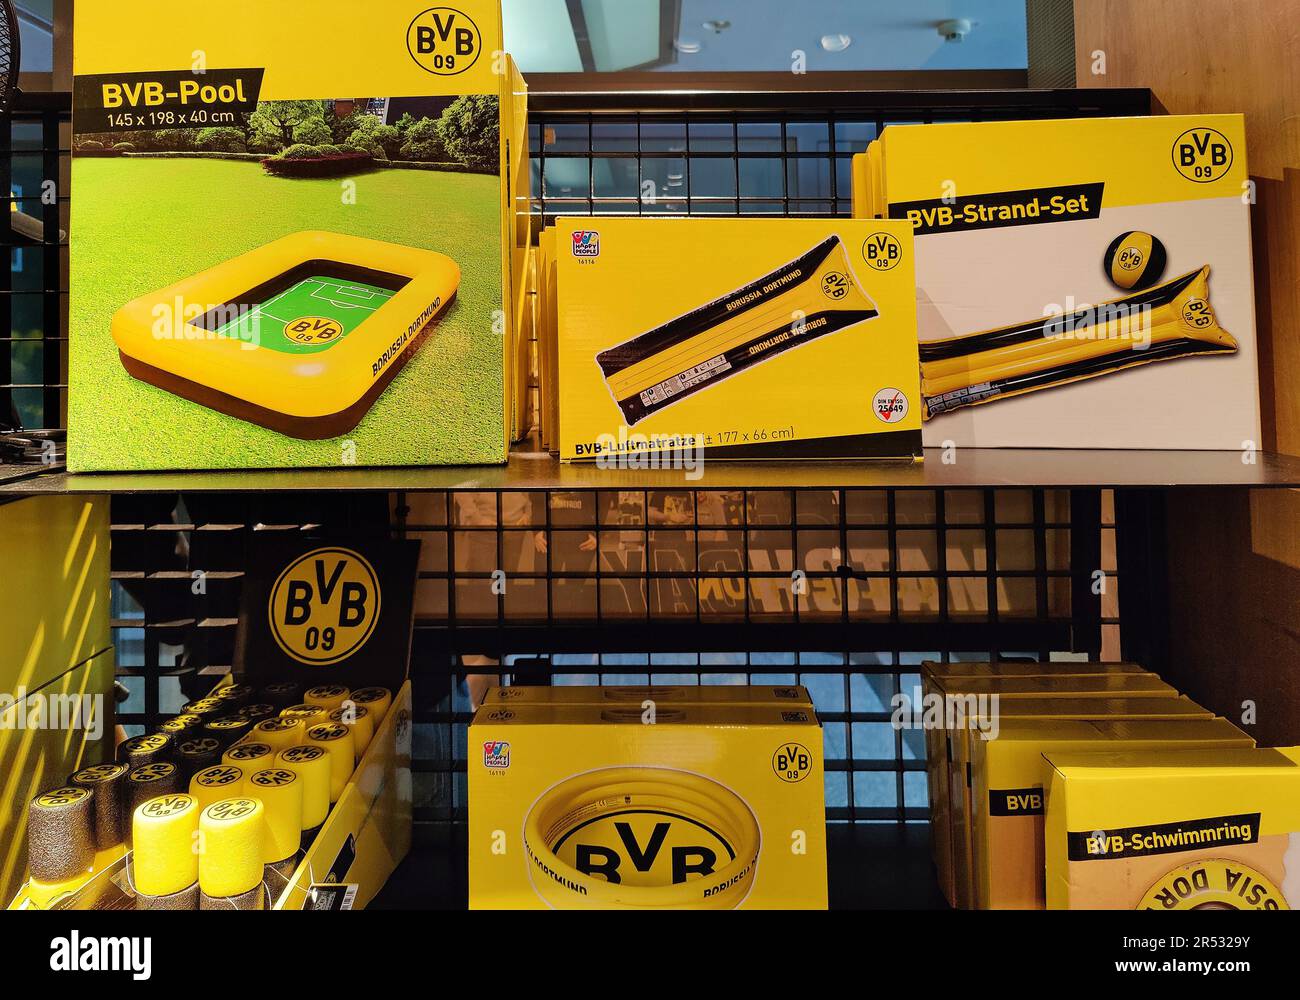 Fanartikel in einem Fanshop in Borussia Dortmund, Dortmund, Ruhrgebiet,  Nordrhein-Westfalen, Deutschland Stockfotografie - Alamy